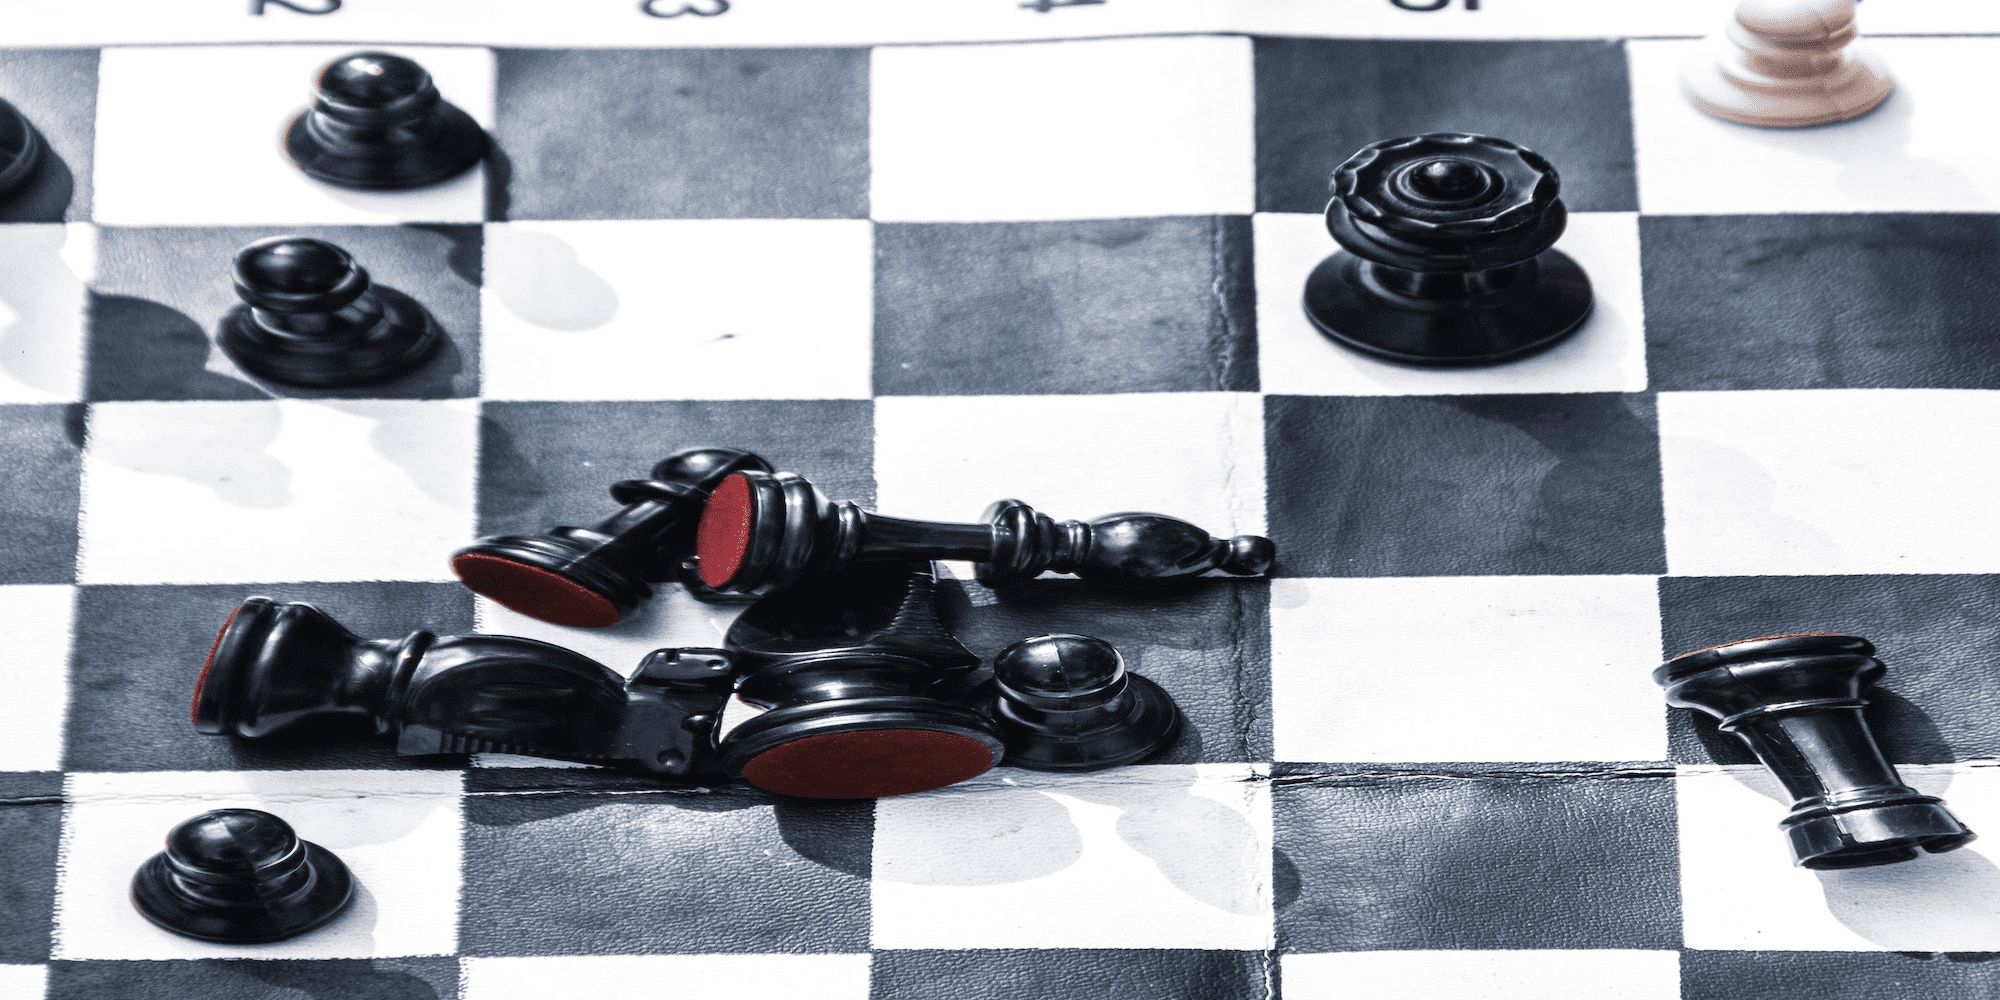 תמונה מתוחה של לוח שחמט.